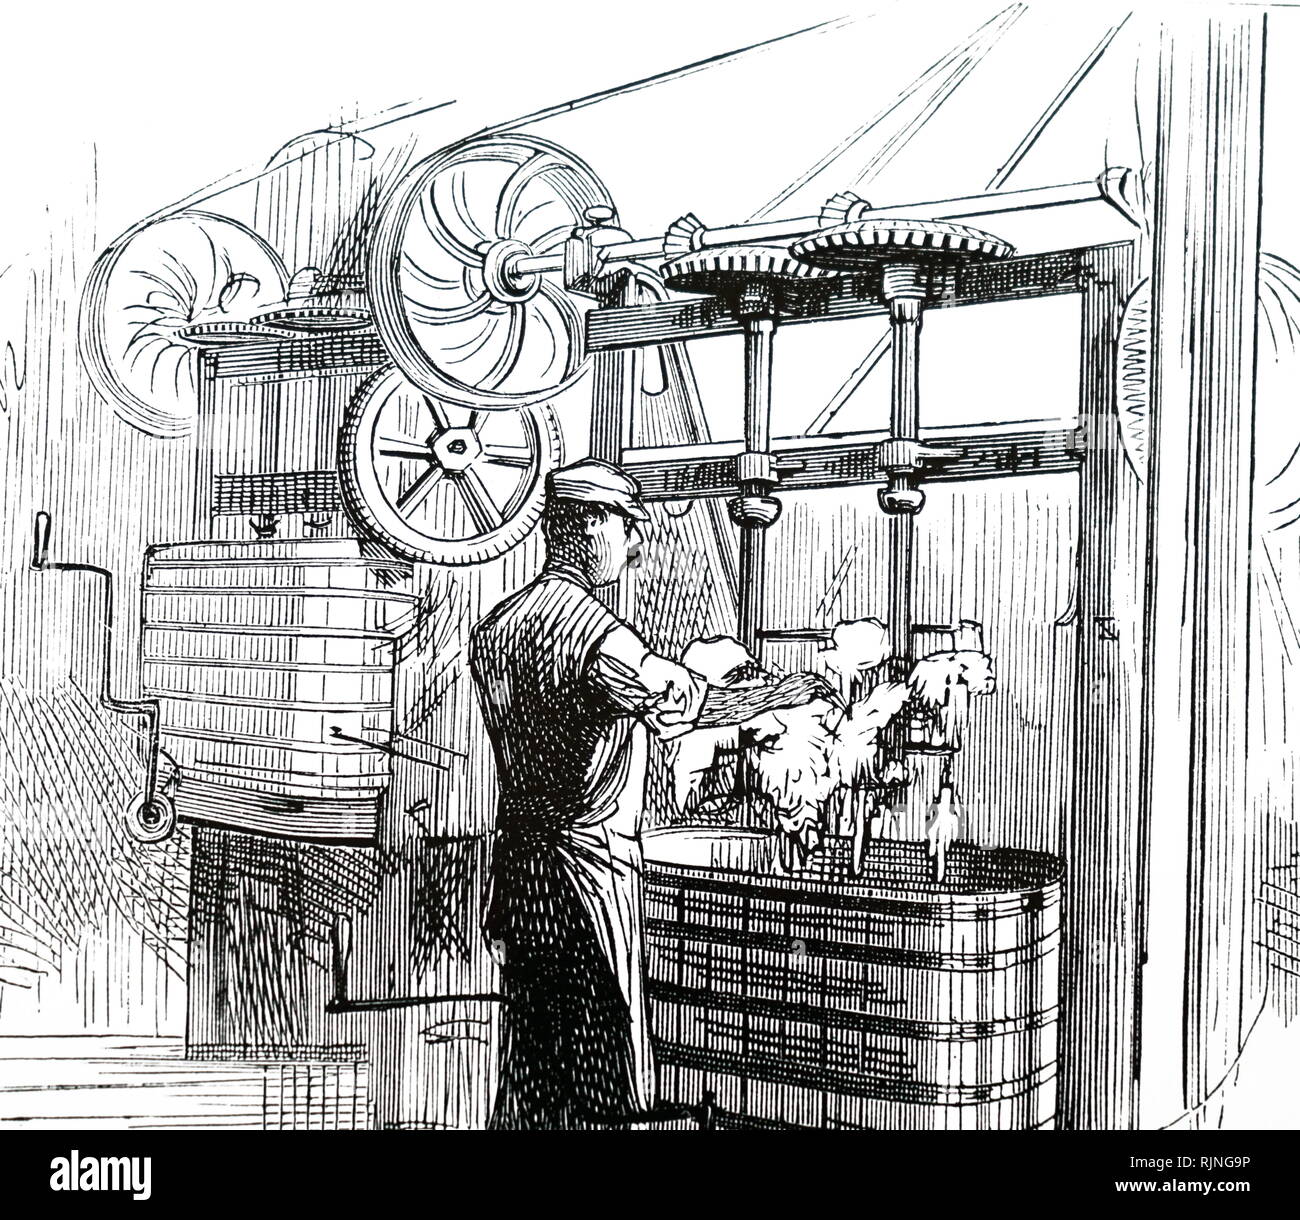 Ein kupferstich mit der Darstellung der Mischen Drums von Peek, keksfabrik Frean&Co., Southwark, London. Vom 19. Jahrhundert Stockfoto